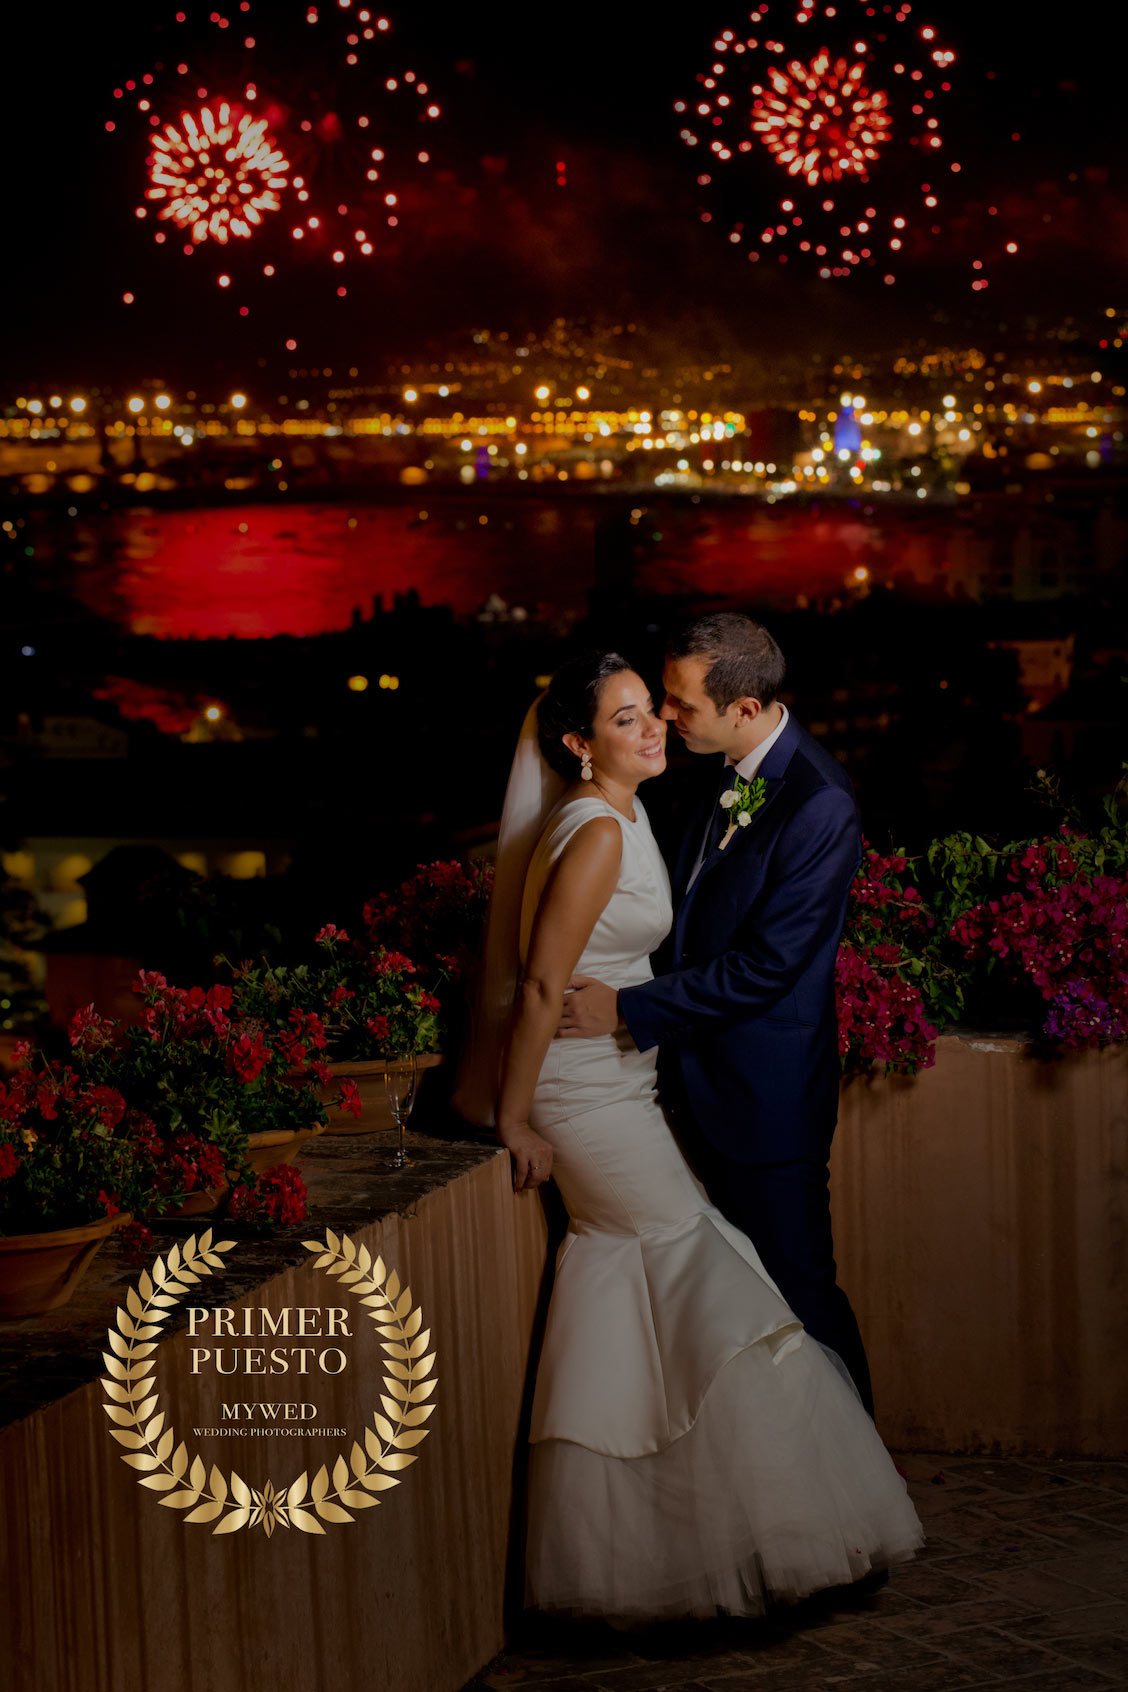 Fotografía de boda premiada en MyWeb por Albert Pamies